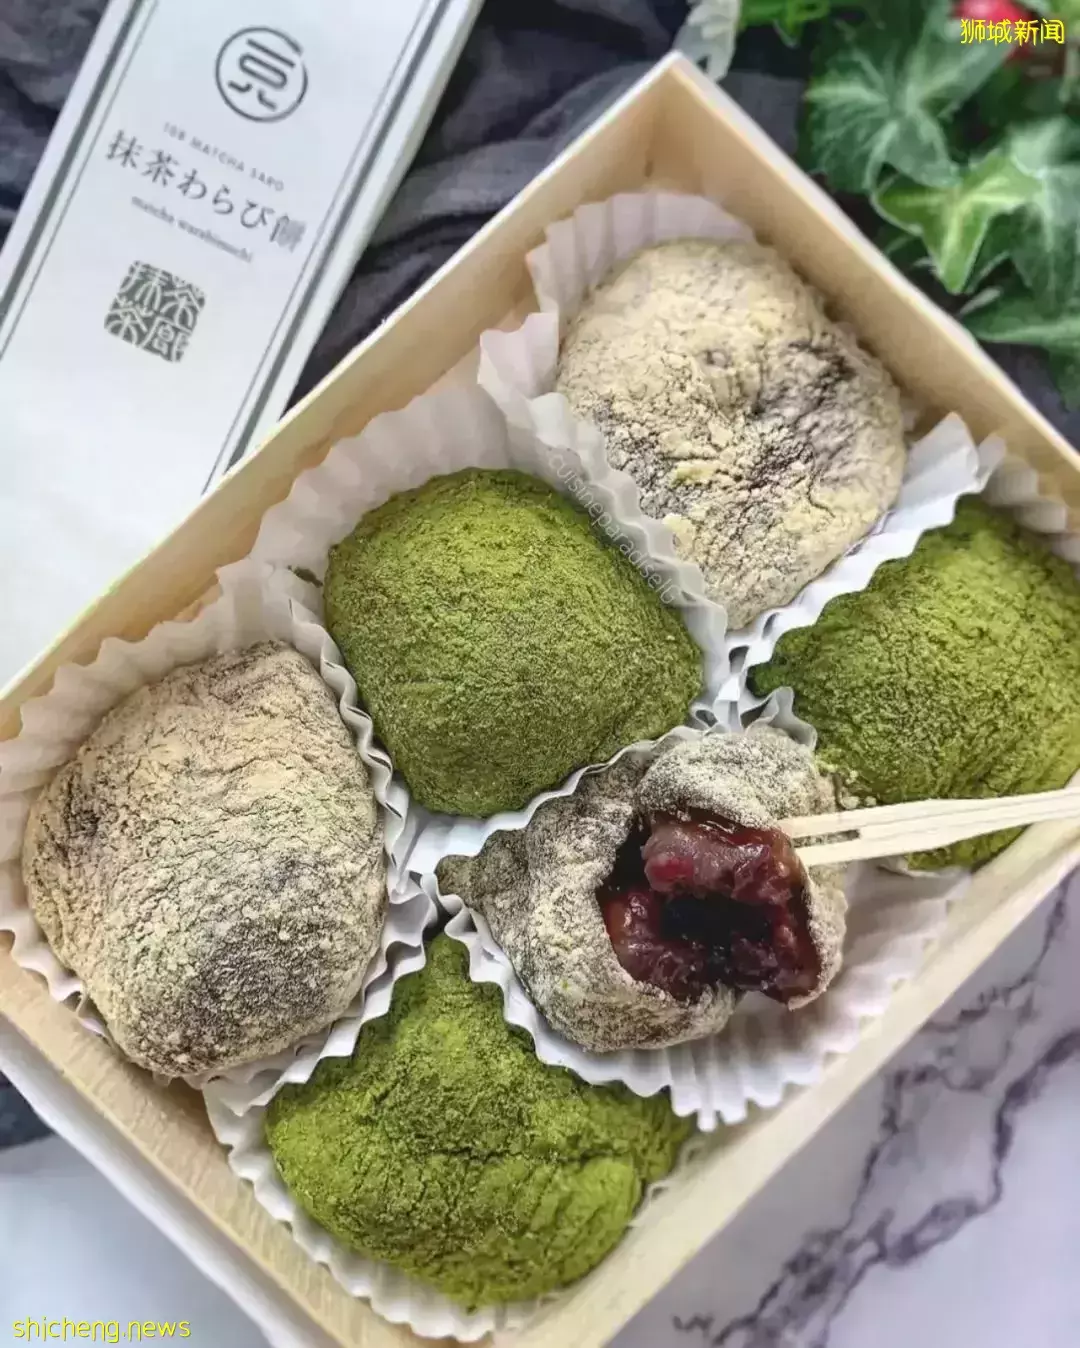 又苦又甜的快樂~新加坡5家最IN抹茶甜品店推薦